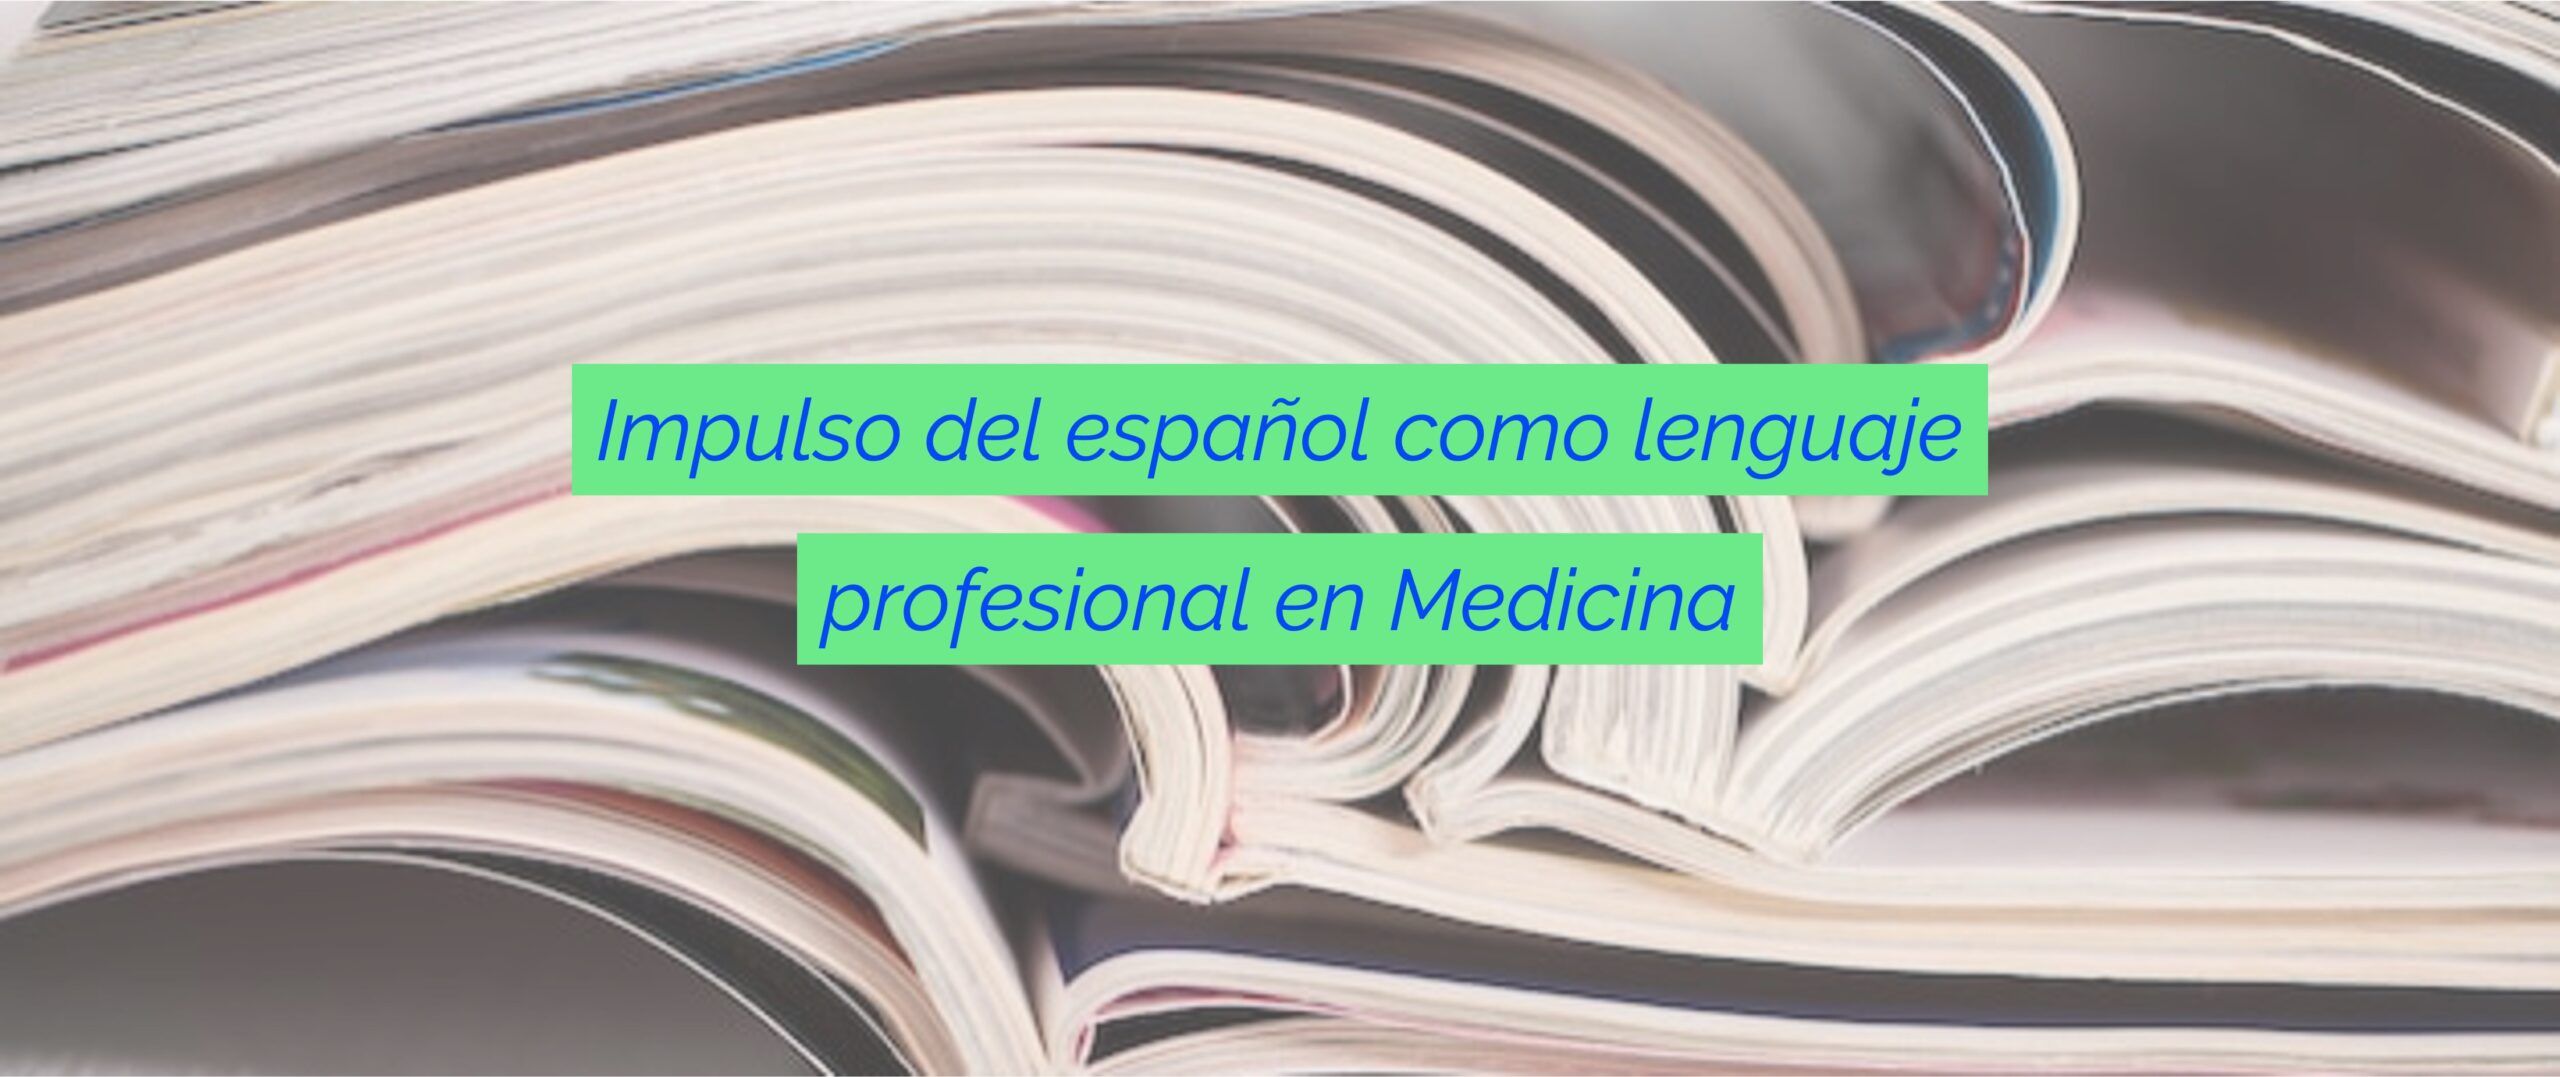 Español como lenguaje en Medicina